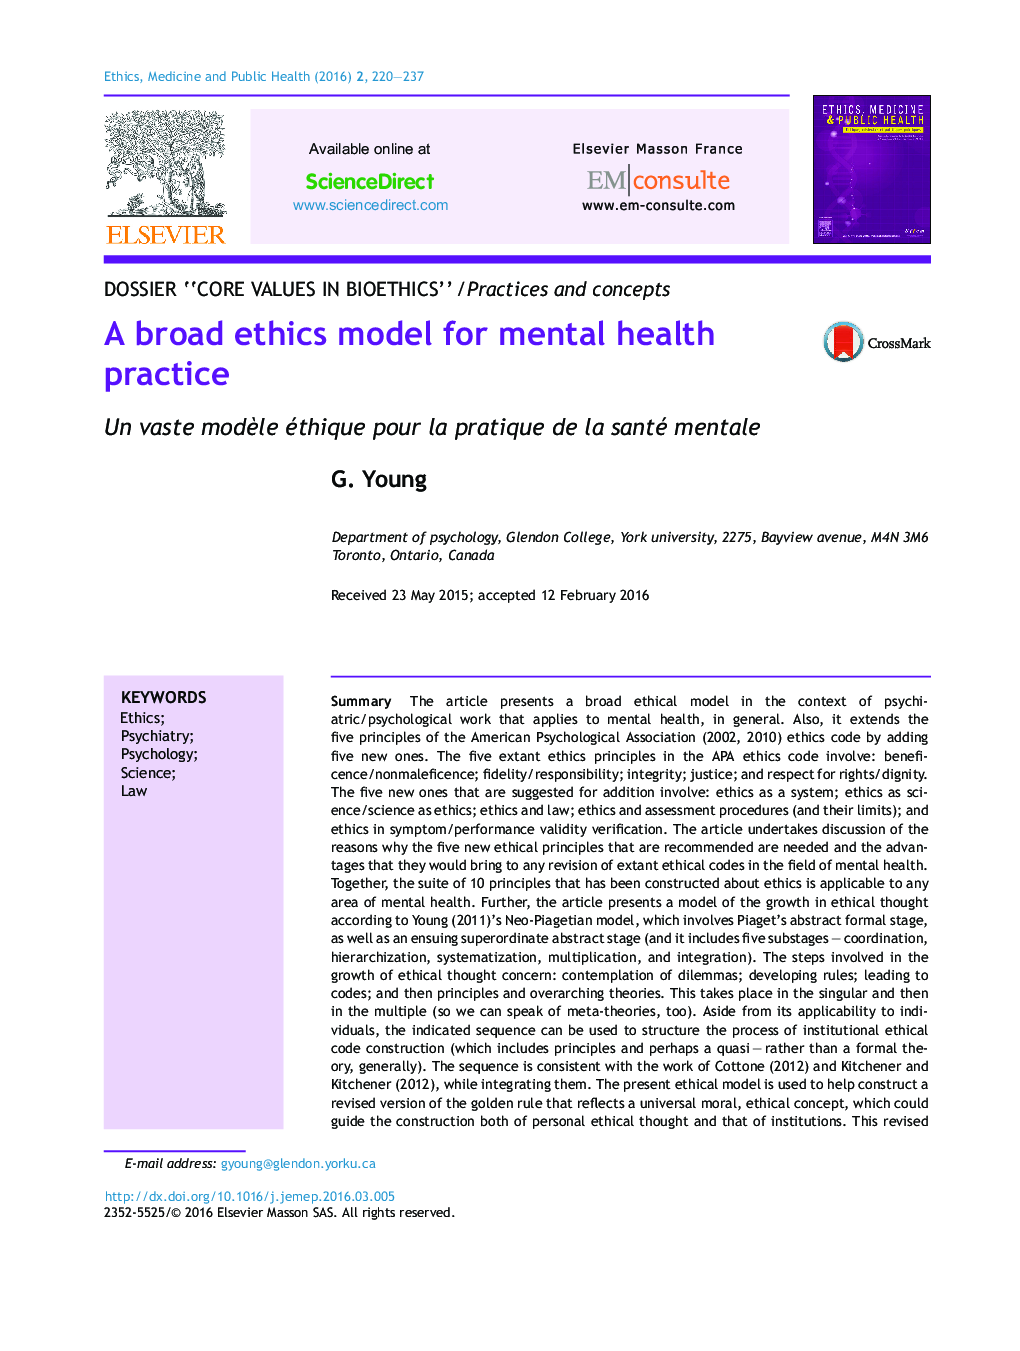 مدل گسترده اخلاق برای شیوه های بهداشت روان